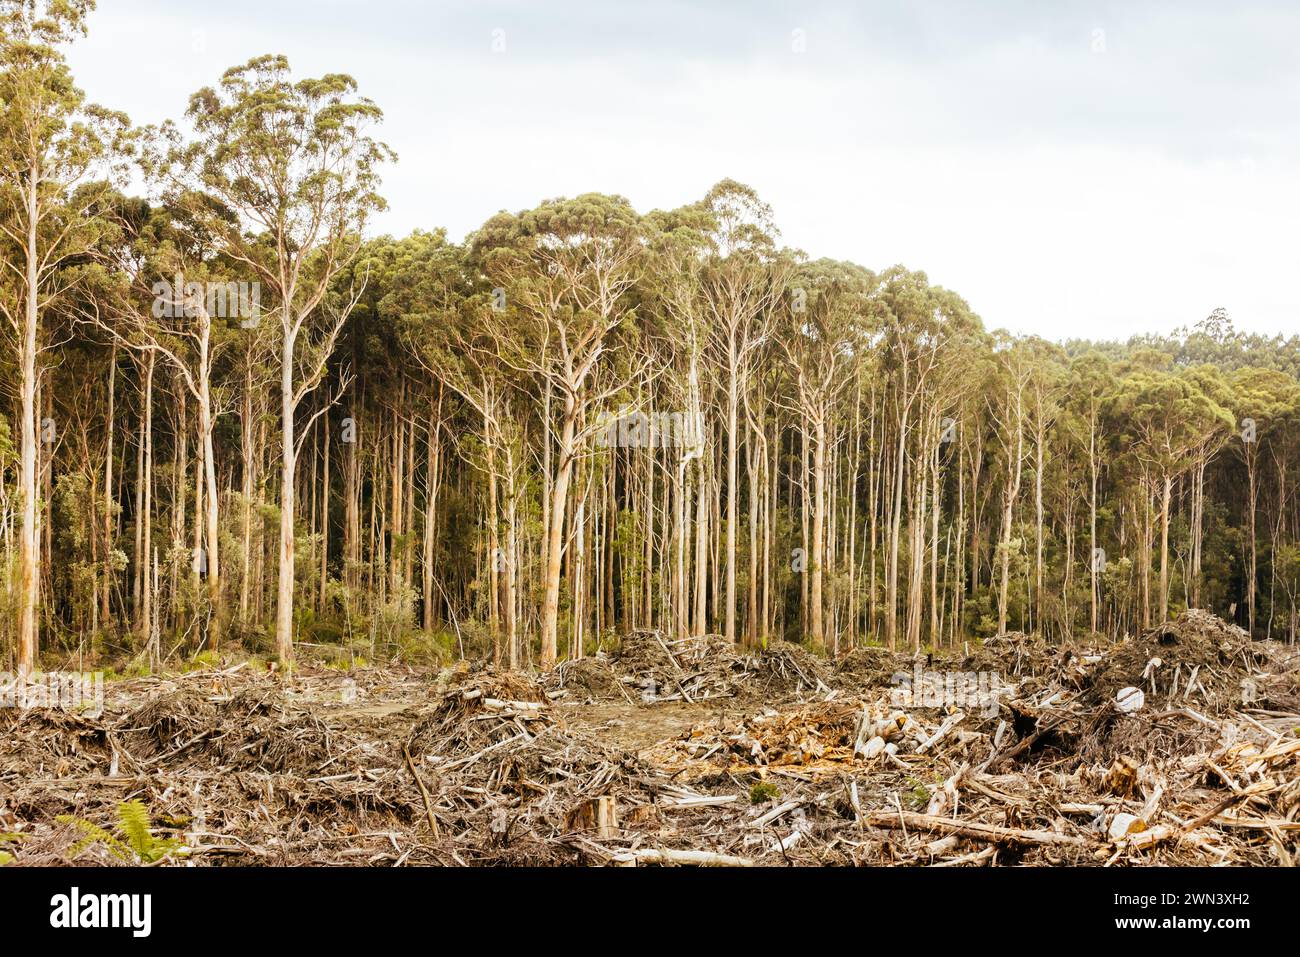 DOVER, AUSTRALIA - 23 FEBBRAIO: La silvicoltura della Tasmania continua il disboscamento del Southwest National Park vicino a dover, un'area Patrimonio dell'Umanità. Quest'area si mantiene inalterata Foto Stock